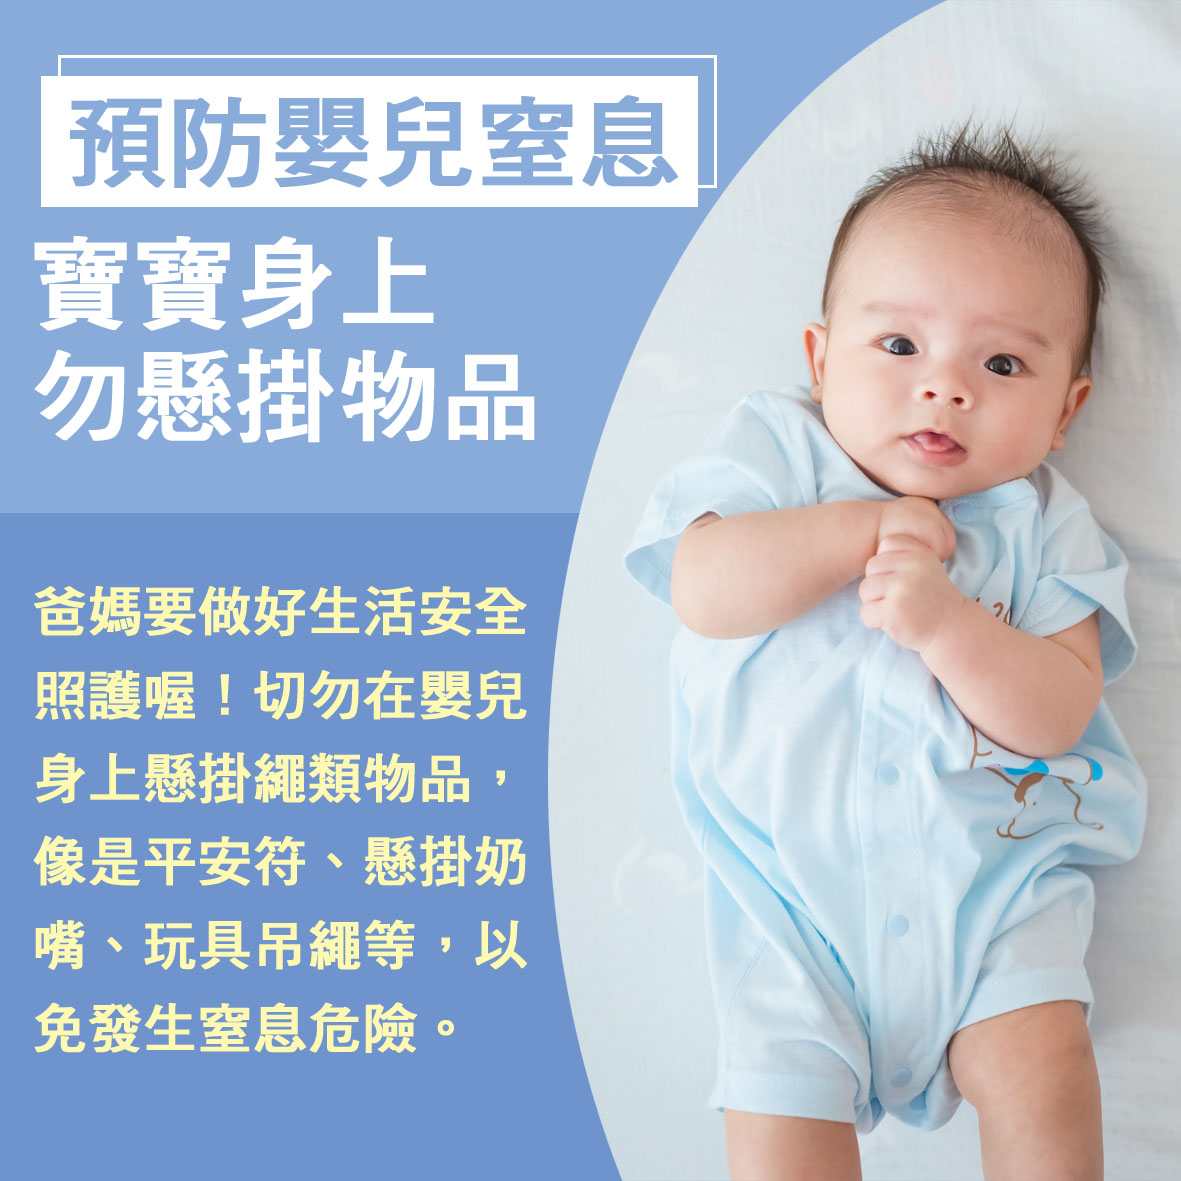 寶寶篇第11週-預防嬰兒窒息 寶寶身上勿懸掛物品文章照片